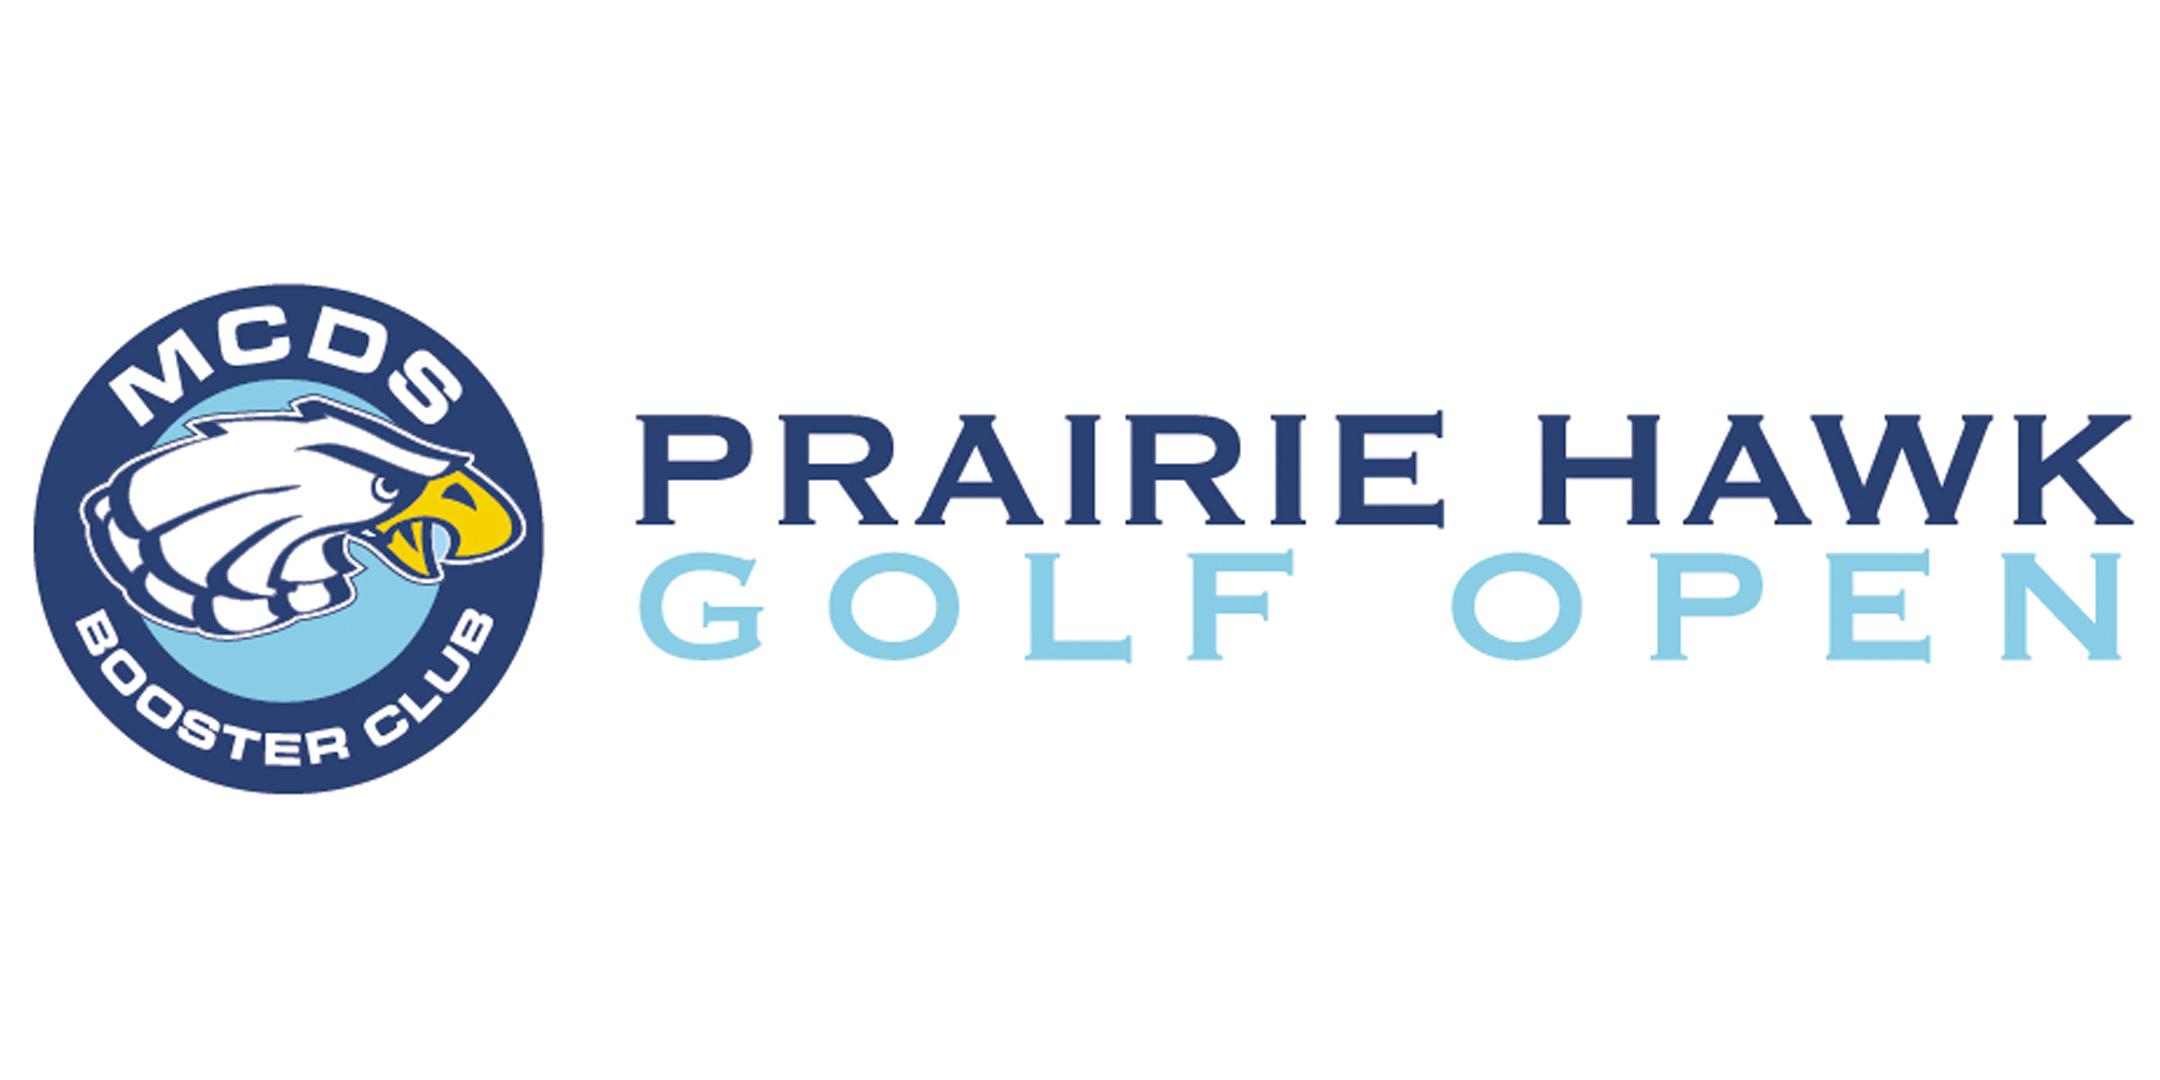 8th Annual Prairie Hawk Golf Open